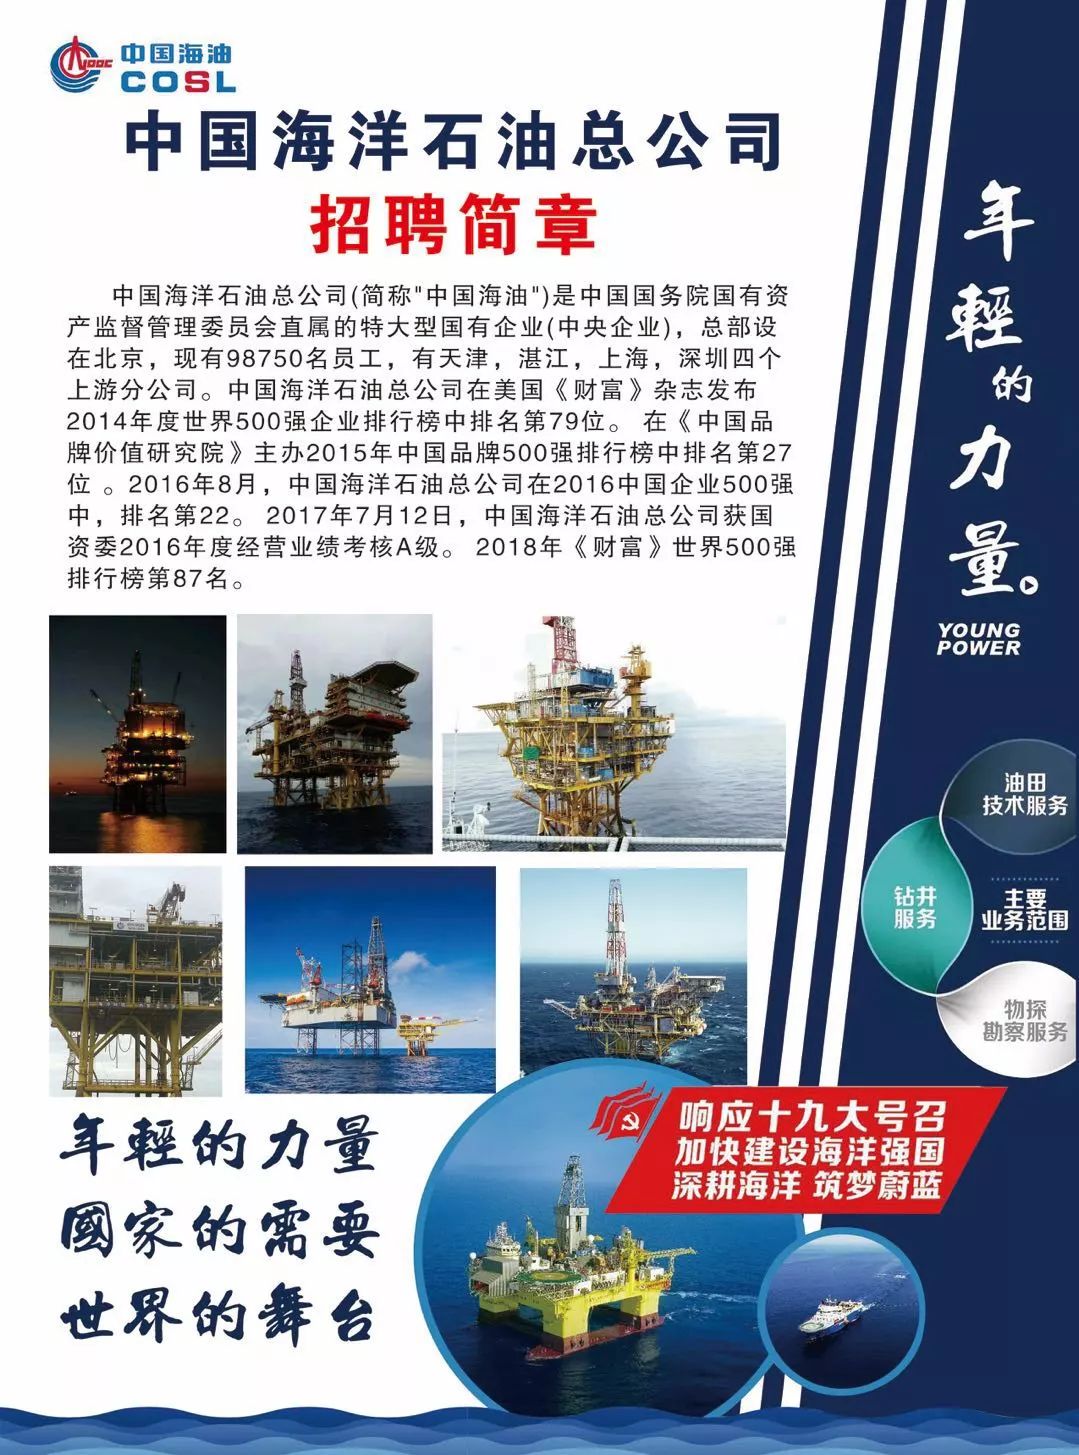 【招聘】国际海员 渤海石油 曼妙人生的开始